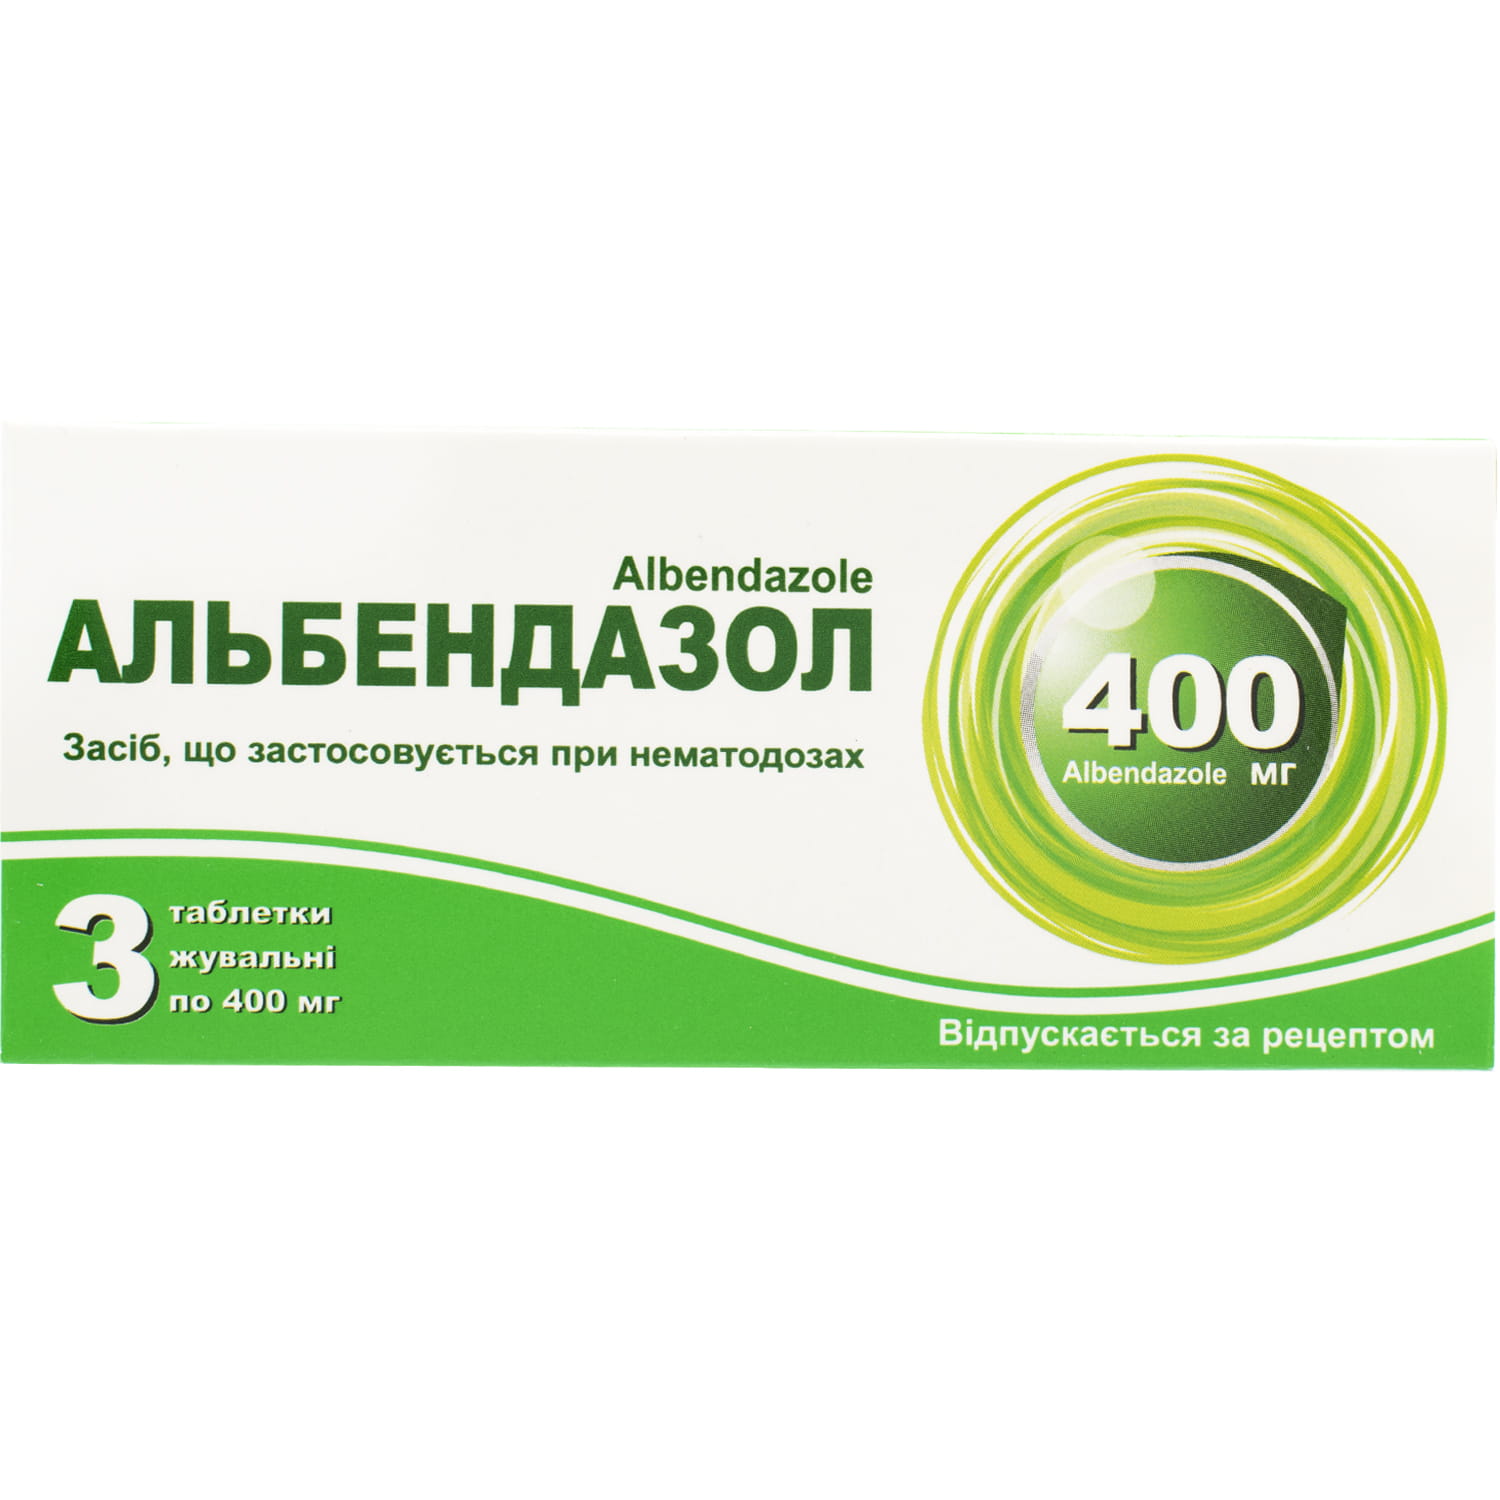 Гельминдазол таблетки 100 мг инструкция по применению